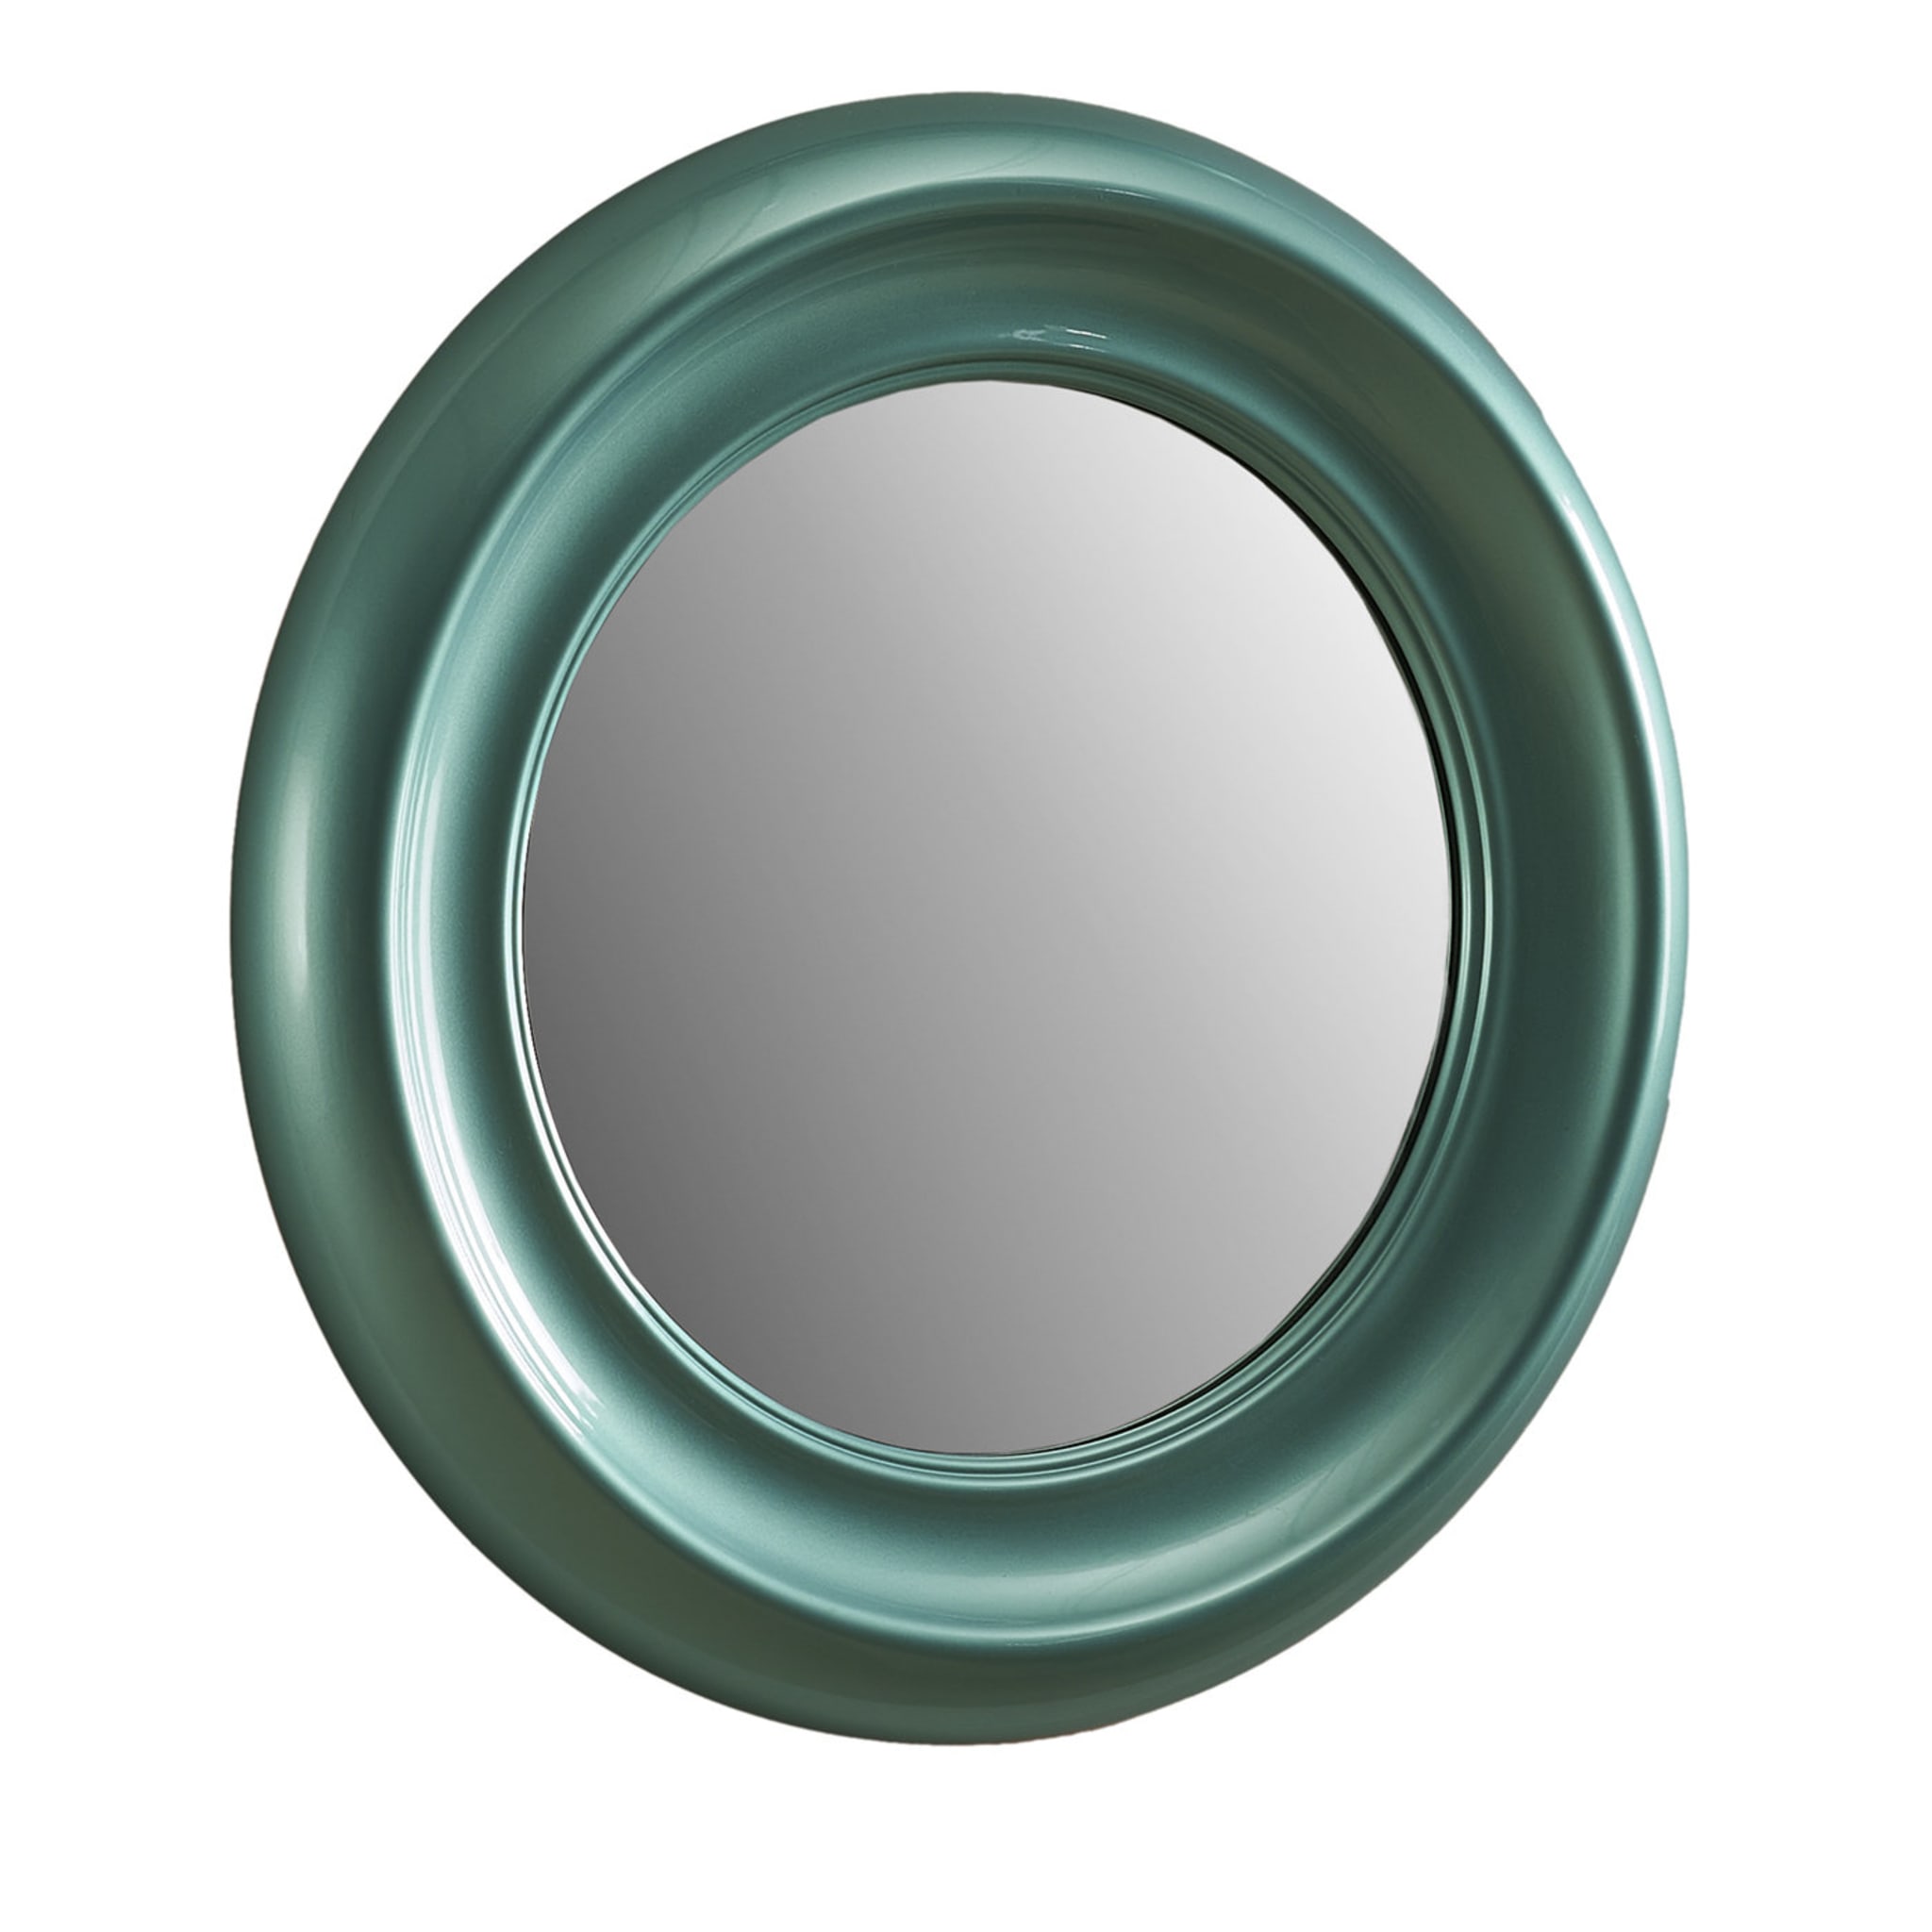 Specchio piccolo in zaffiro - Vista principale